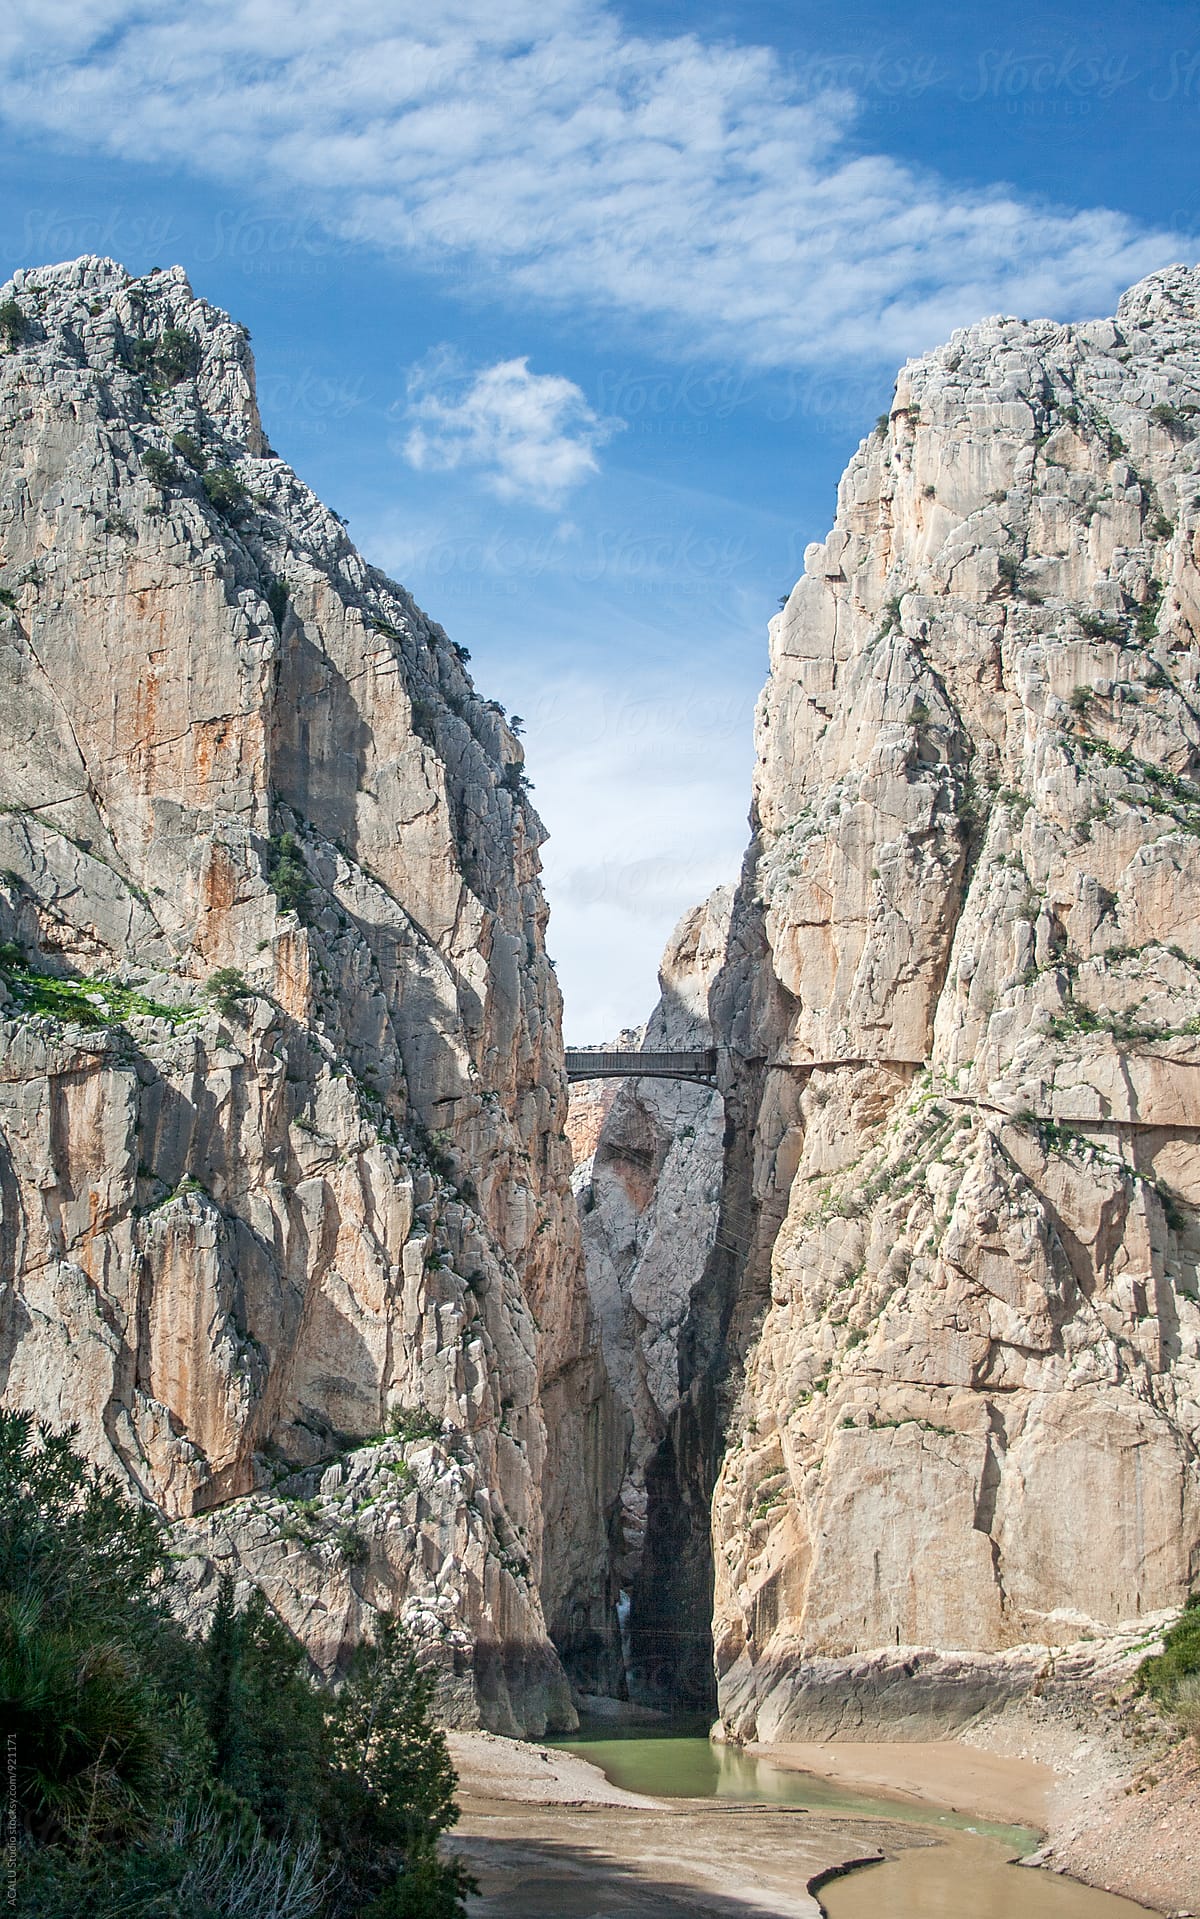 Bridge in a rocky mountain in Caminito del Rey